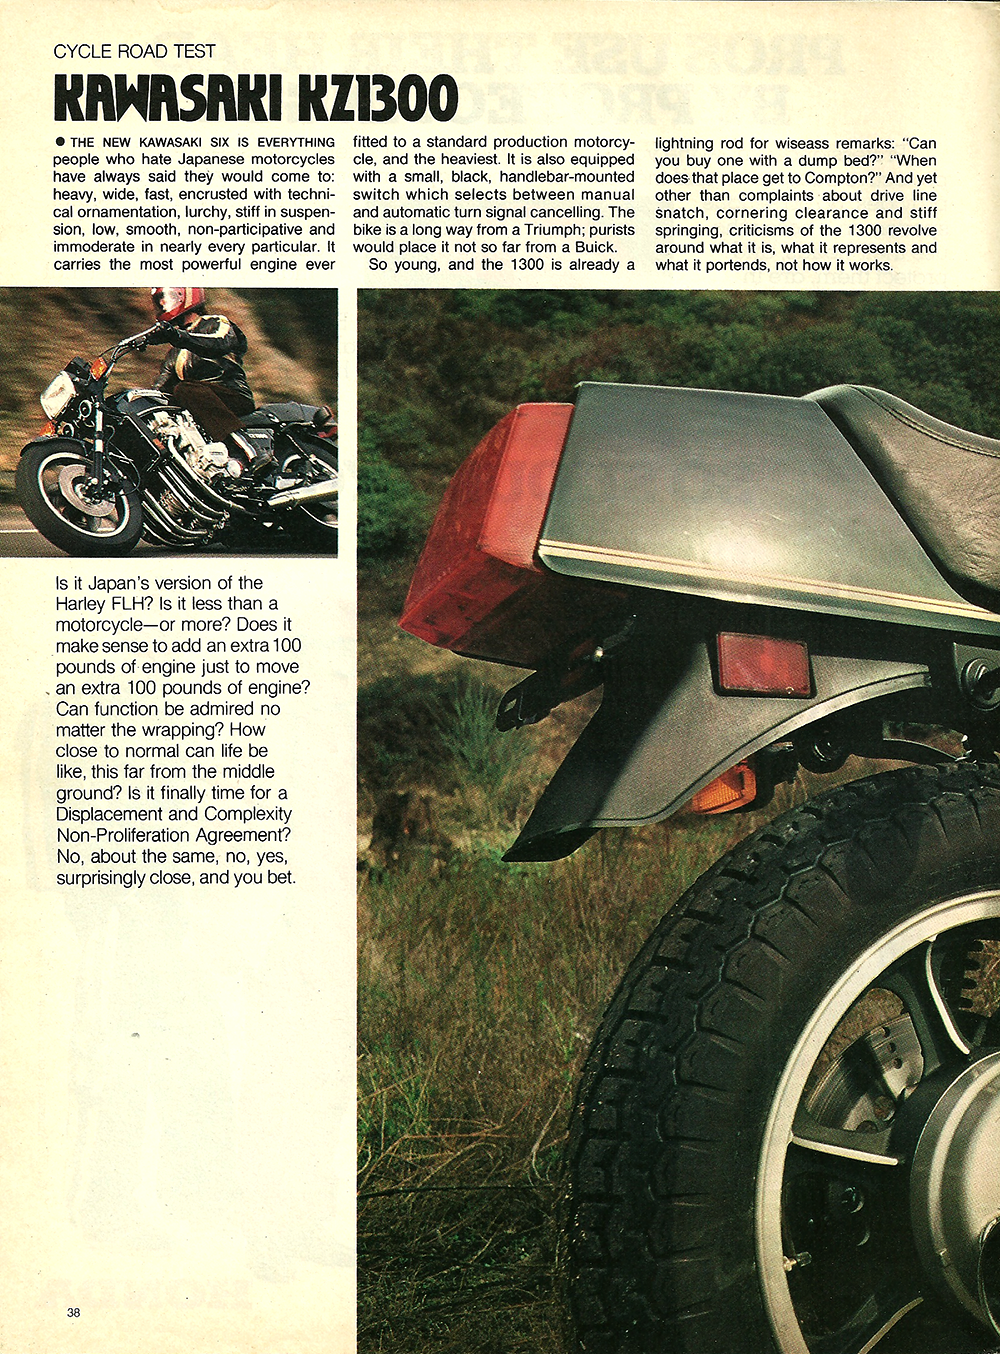 døråbning Som sammensmeltning 1979 Kawasaki KZ1300 road test — Ye Olde Cycle Shoppe